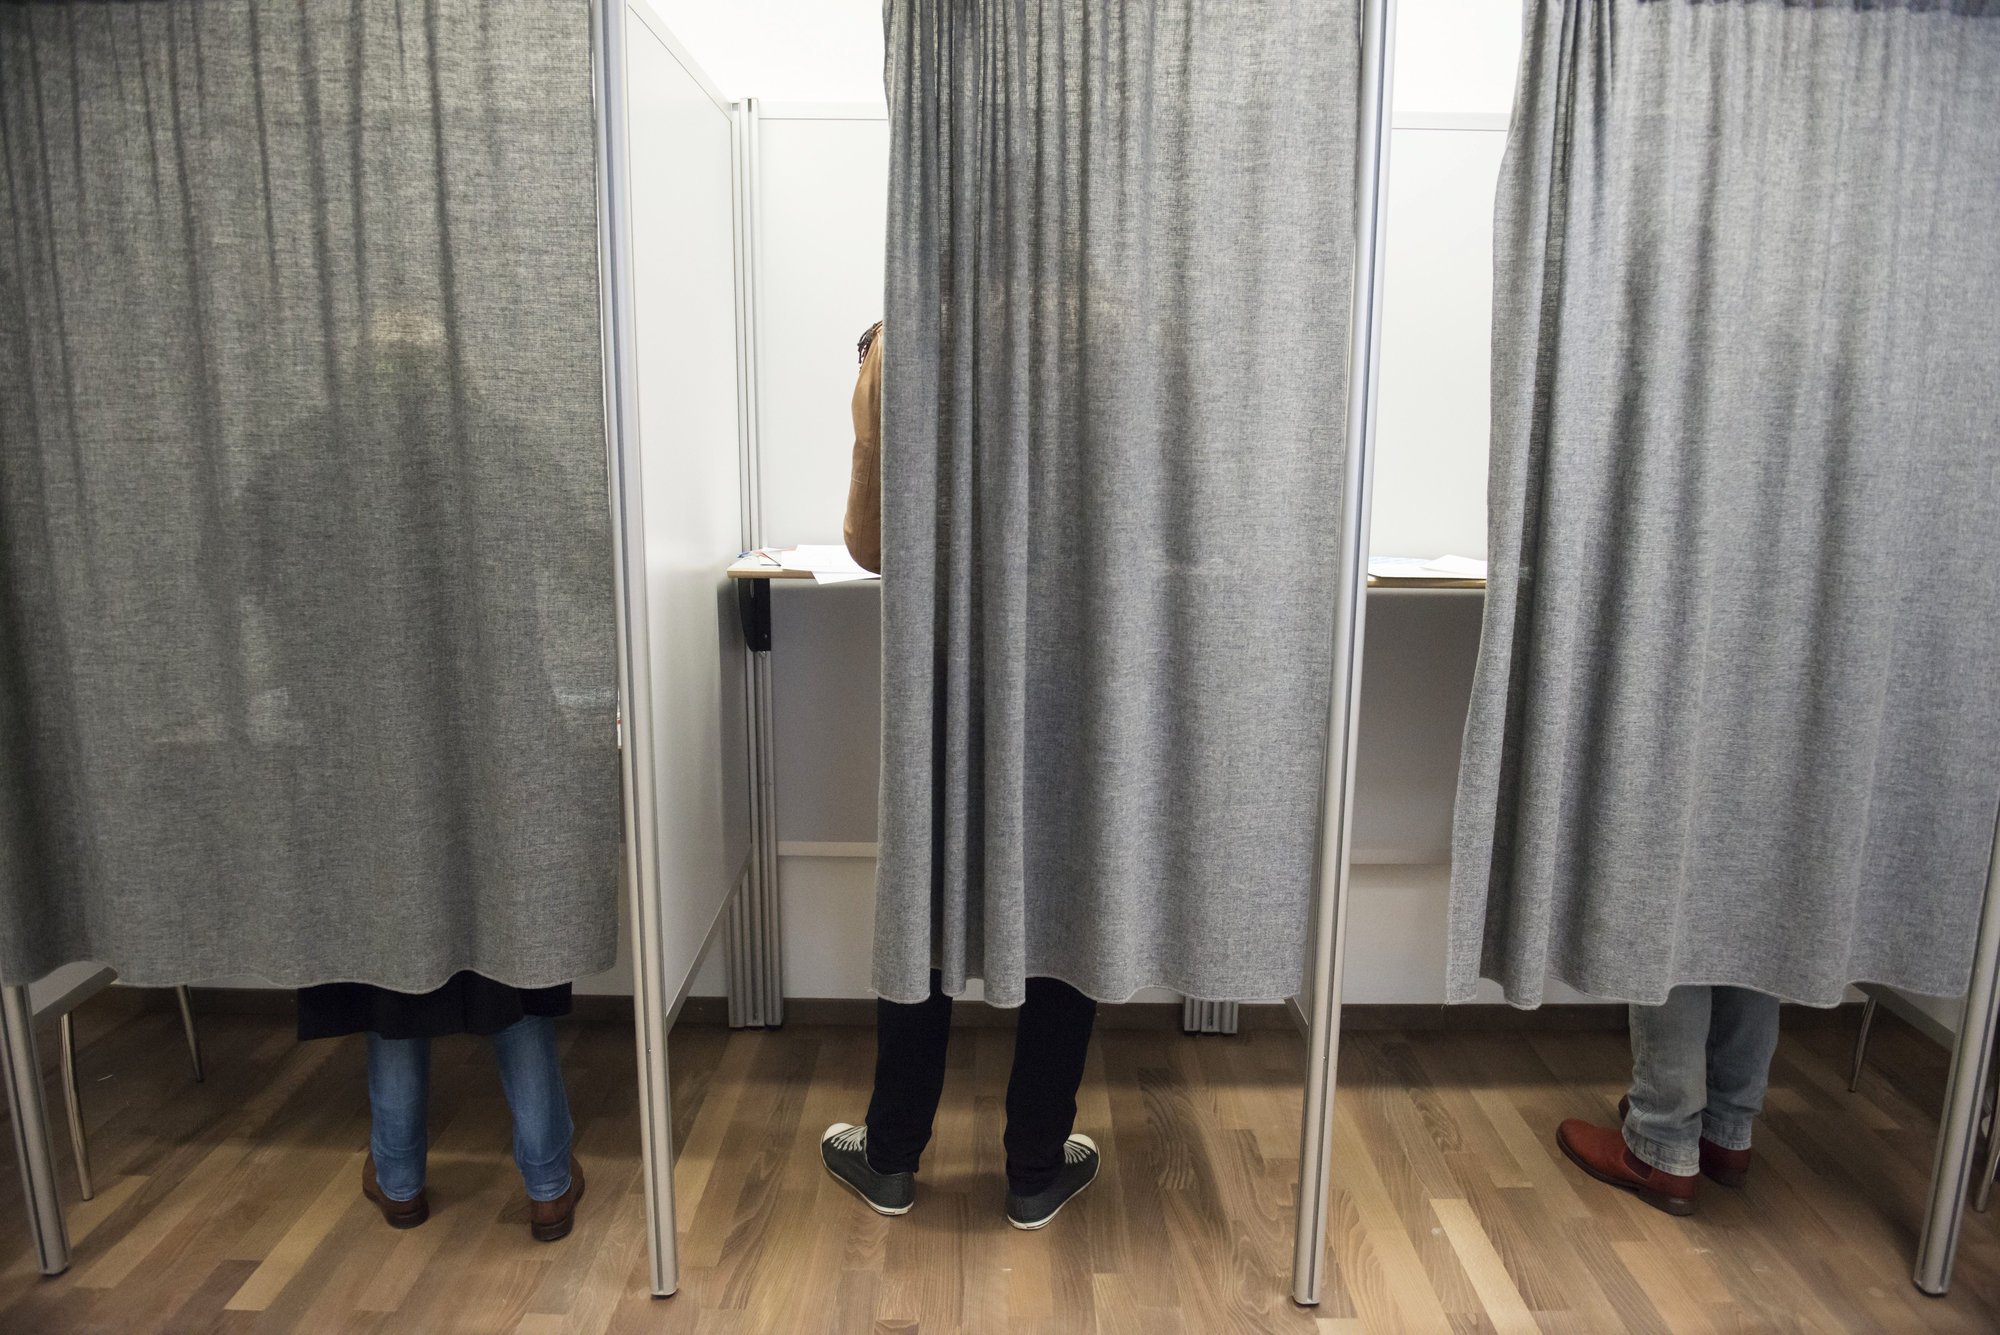 Le droit de vote pourrait être abaissé à 16 ans dans le canton de Berne.